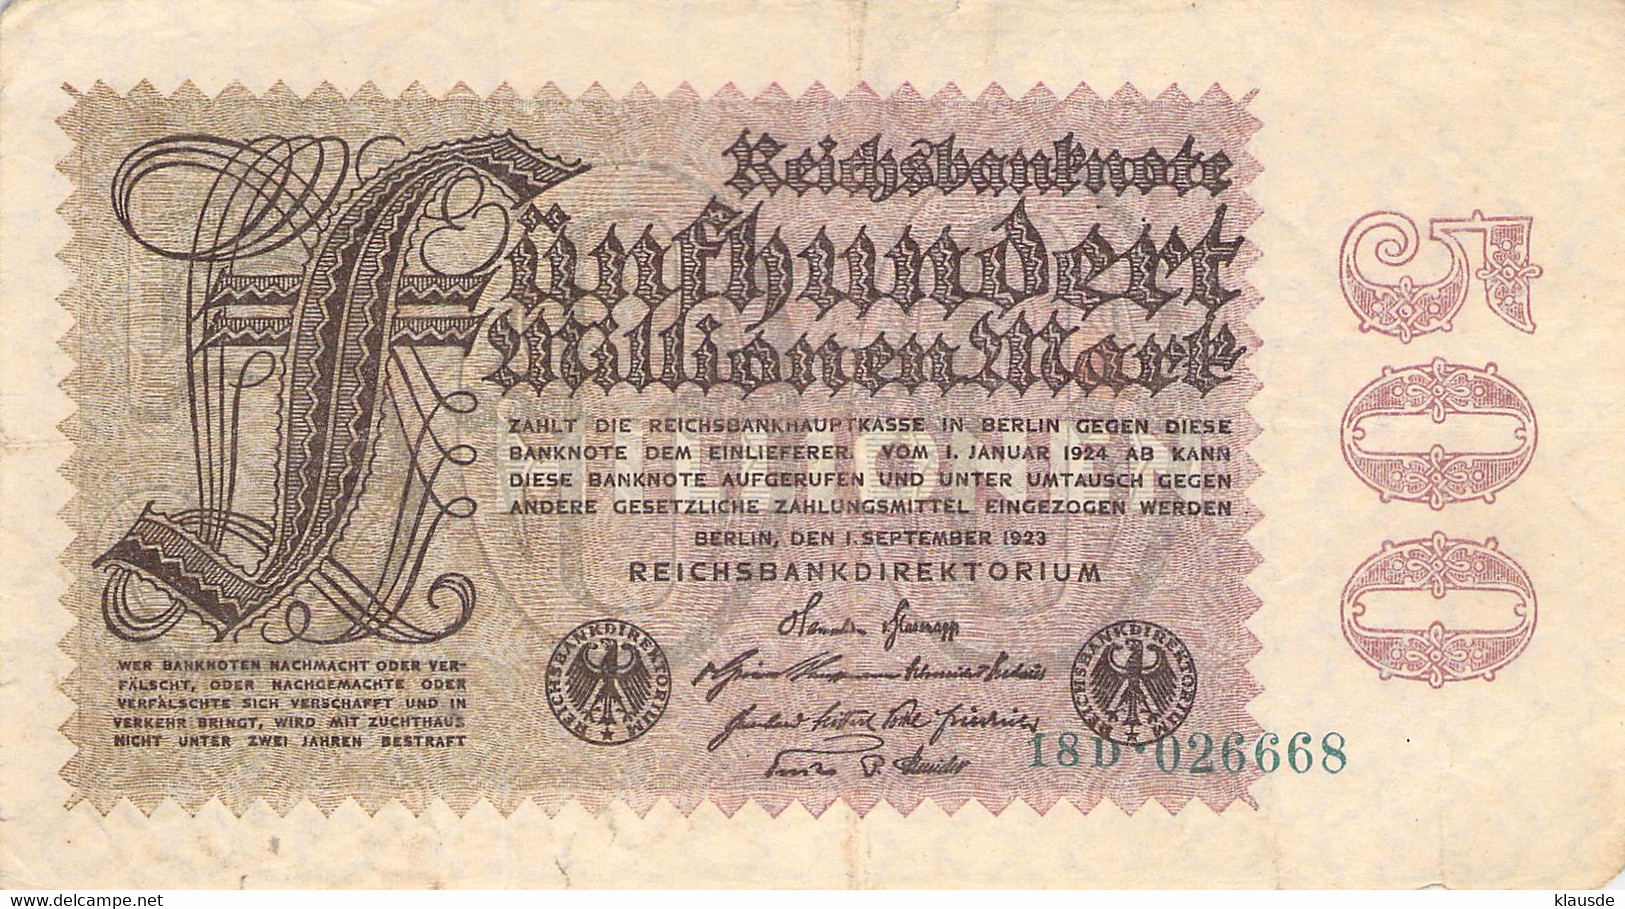 500 Mio Mark Reichsbanknote VF/F (III) - 500 Miljoen Mark